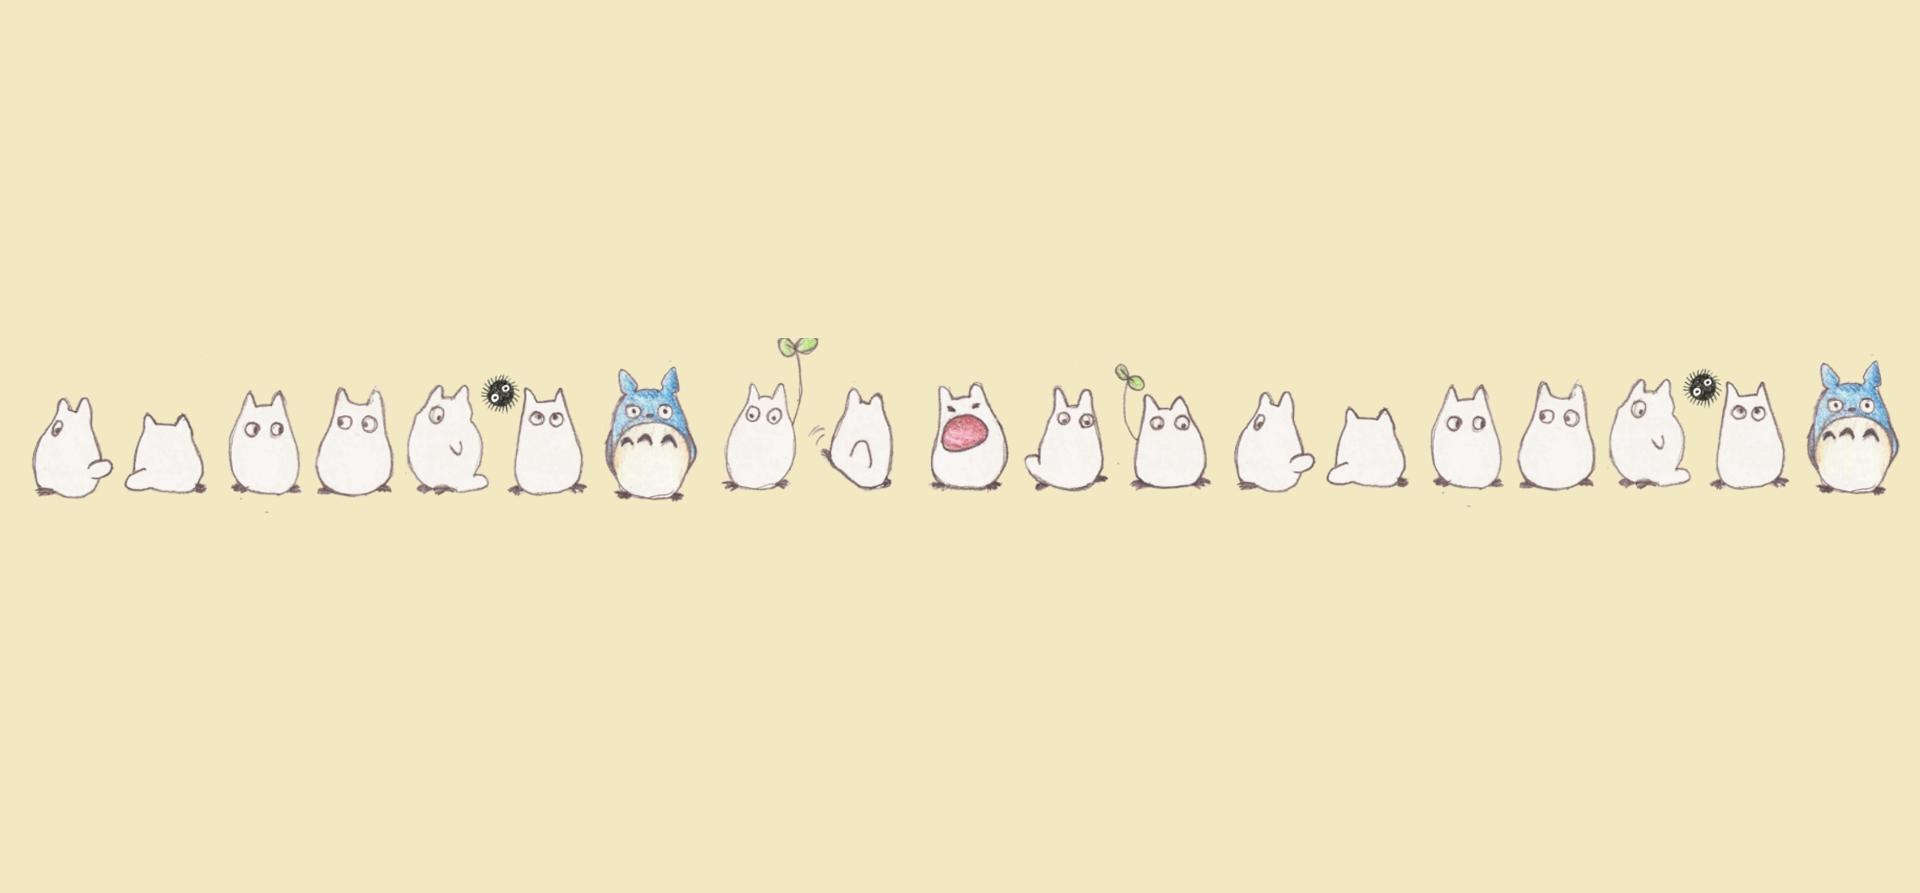 Free download Kawaii Totoro Desktop Wallpaper Cute Wallpaper